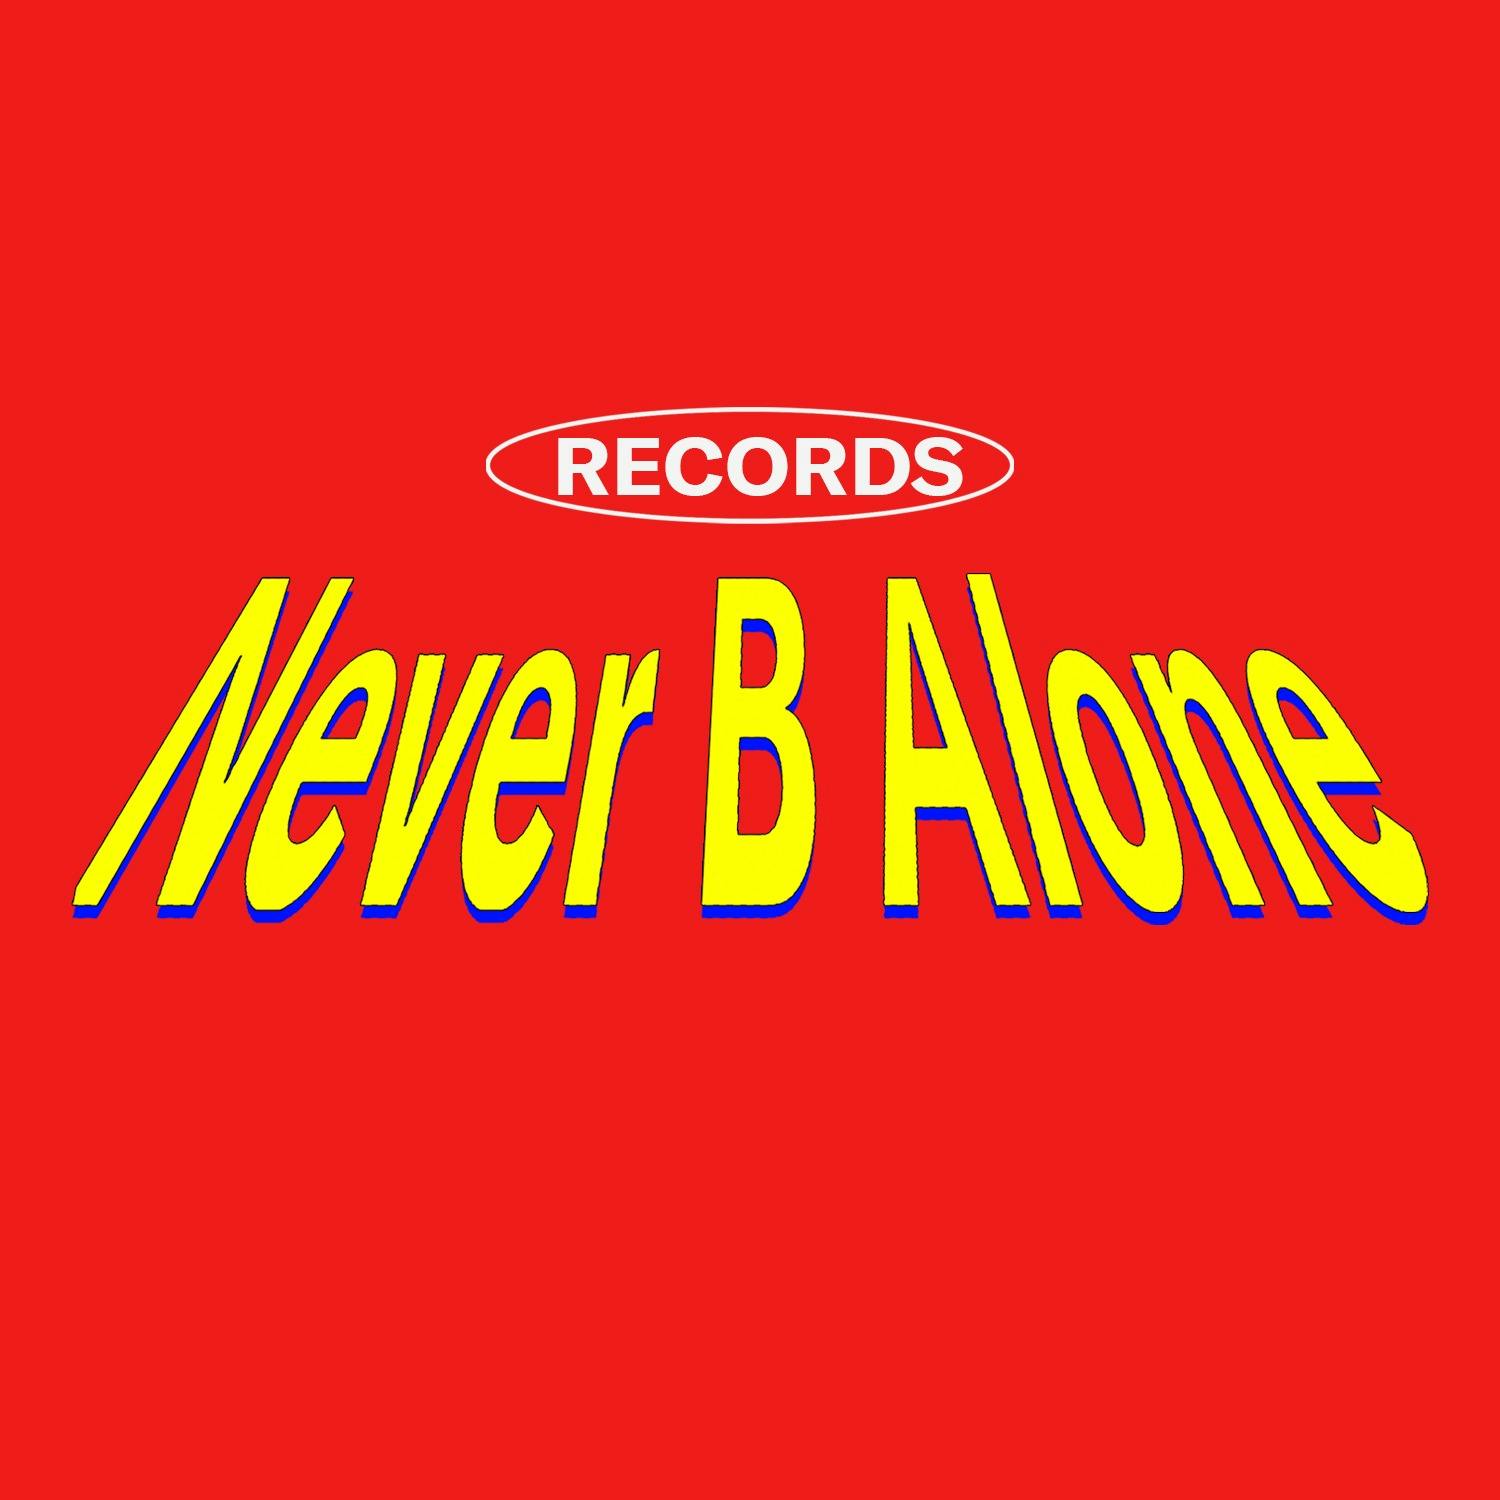 Never B Alone Records